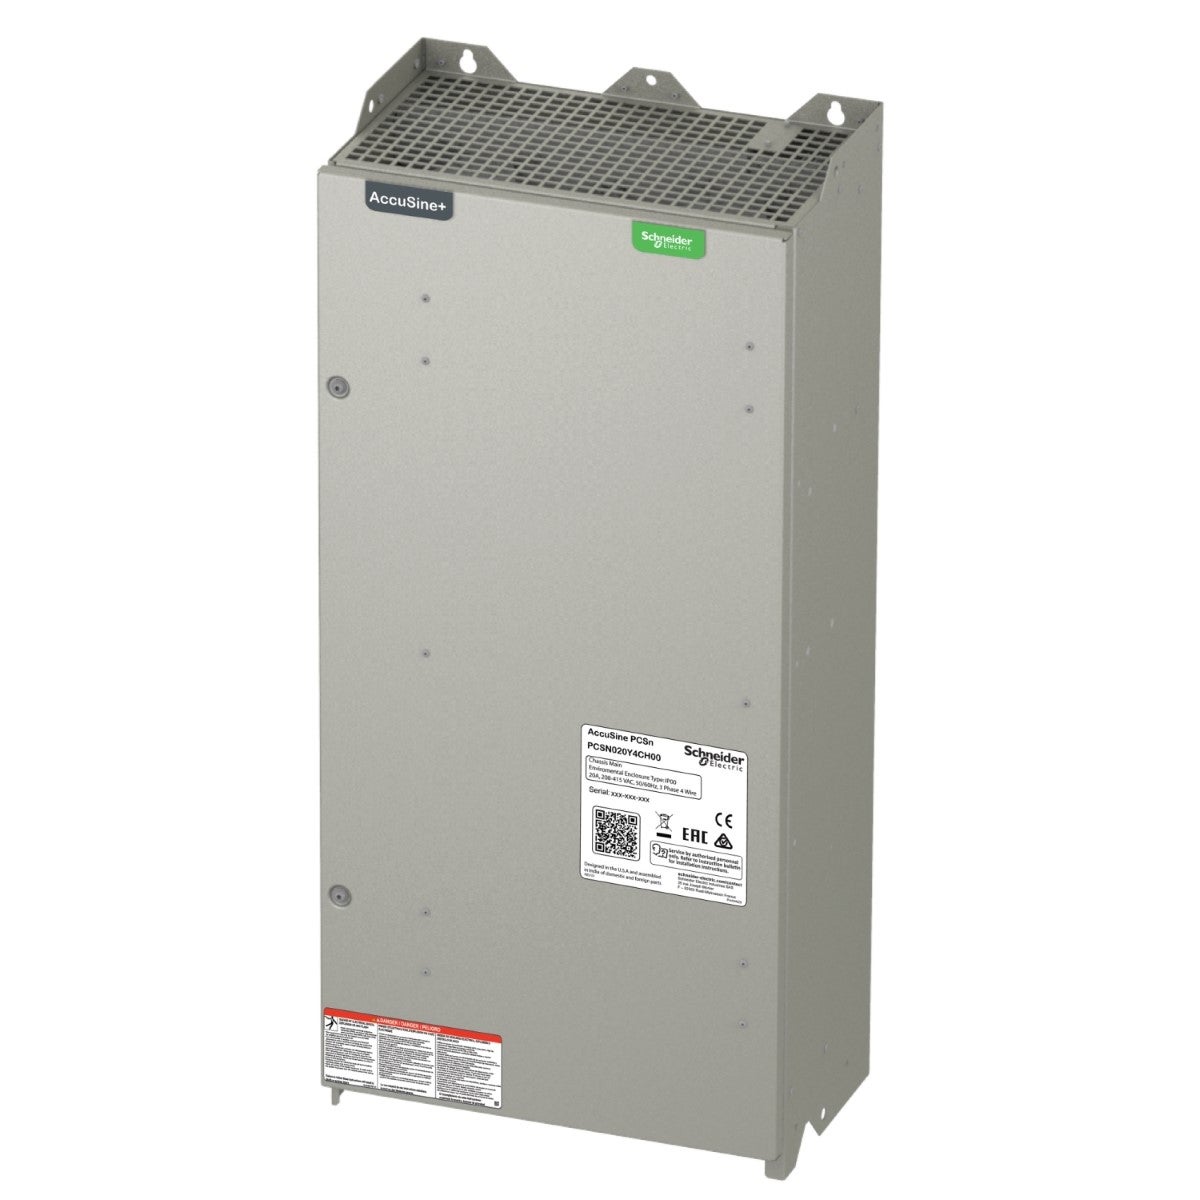 PCSN active harmonic filter 60 amp 208-415 VAC - wall-mounted, IP00 enclosure